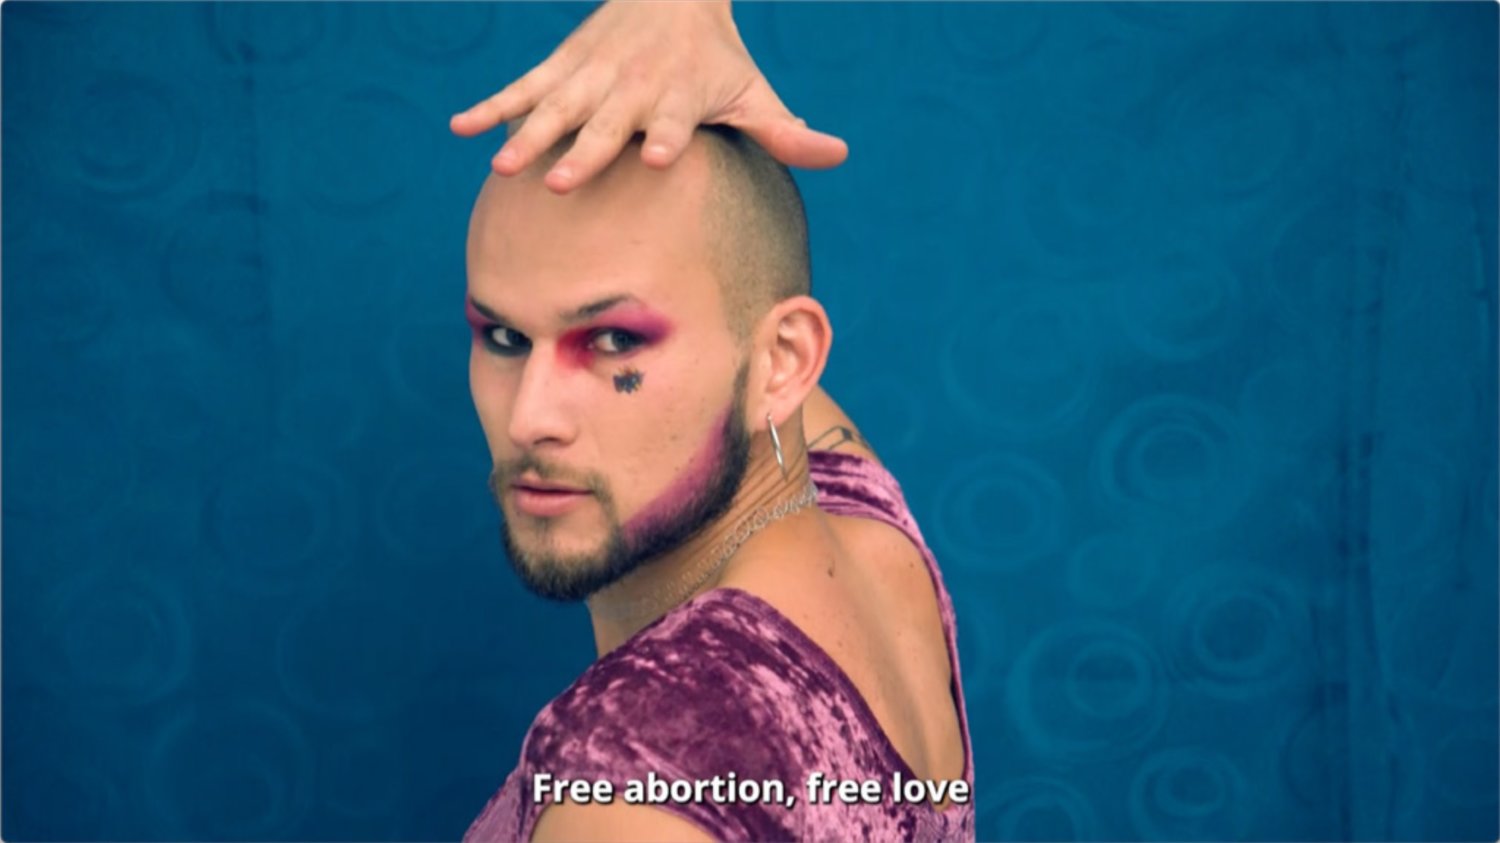 Eine geschminkte männlich gelesene Person im Samtoberteil guckt in die Kamera. Darunter steht "Free abortion, free love".